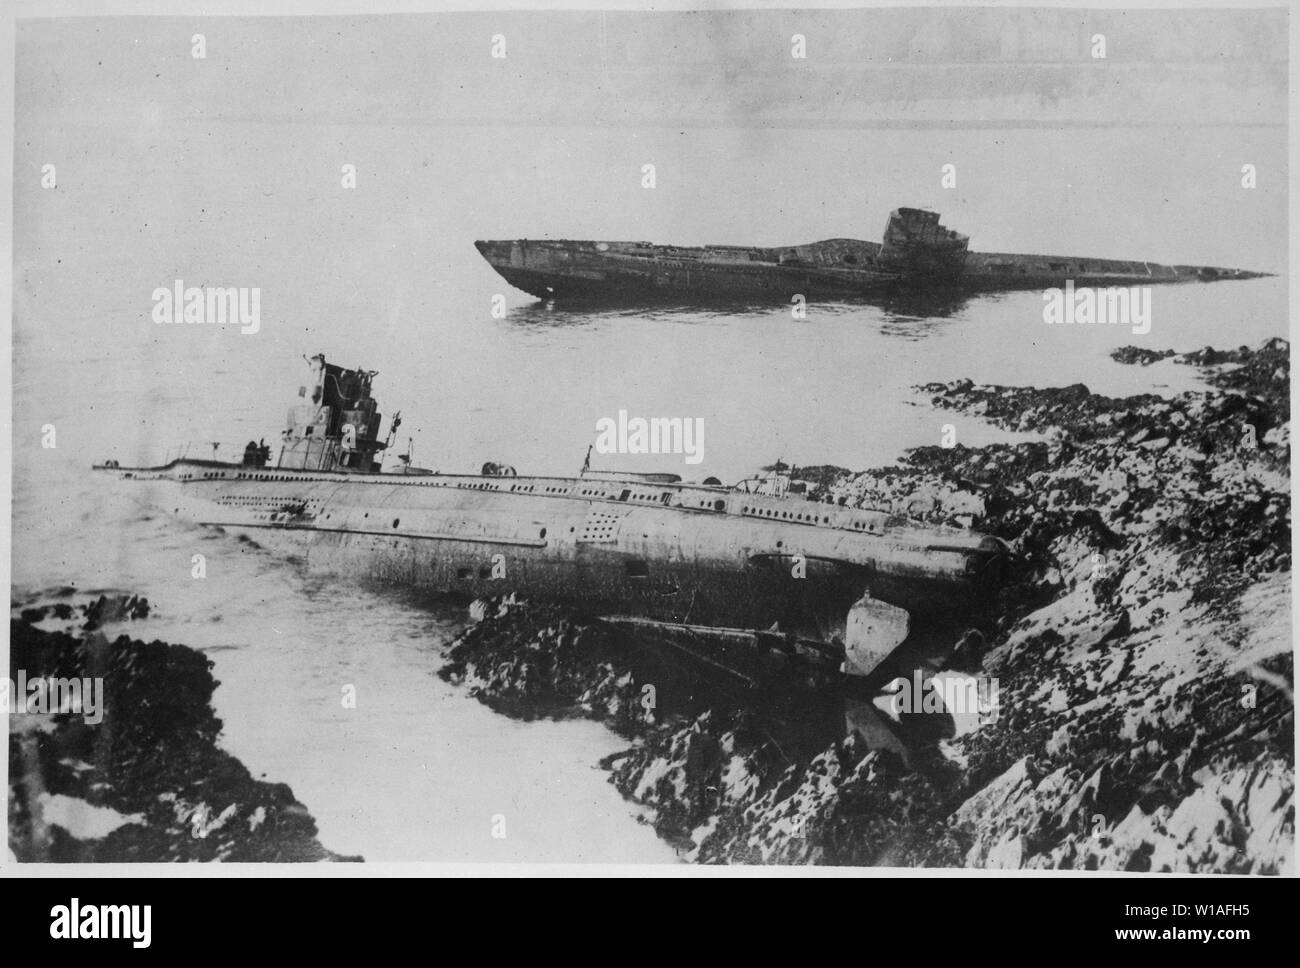 Ein bemerkenswertes Ereignis der Nachkriegszeit die Waschmaschine war bis auf den Felsen bei Falmouth, England, von zwei deutschen U-Boote. Sie waren, aber ein paar Meter auseinander; während des Krieges versenkt worden war. Internationale Nachrichten Fotos., 1921; Allgemeine Hinweise: Zwei deutsche U-Boote in der Nähe von Falmouth 1921 geerdet. Die näher an der Kamera ist UB86, UB III U-Boot, das am 10. November 1917 in Auftrag gegeben worden war, und machte fünf Patrouillen während des Ersten Weltkriegs (der Baunummer ist noch sichtbar). Es wurde in Großbritannien am 24. November 1918 übergeben. Es wurde im Ort in der Nähe von Falmouth aufgeschlüsselt nach 1921 nach Masse Stockfoto